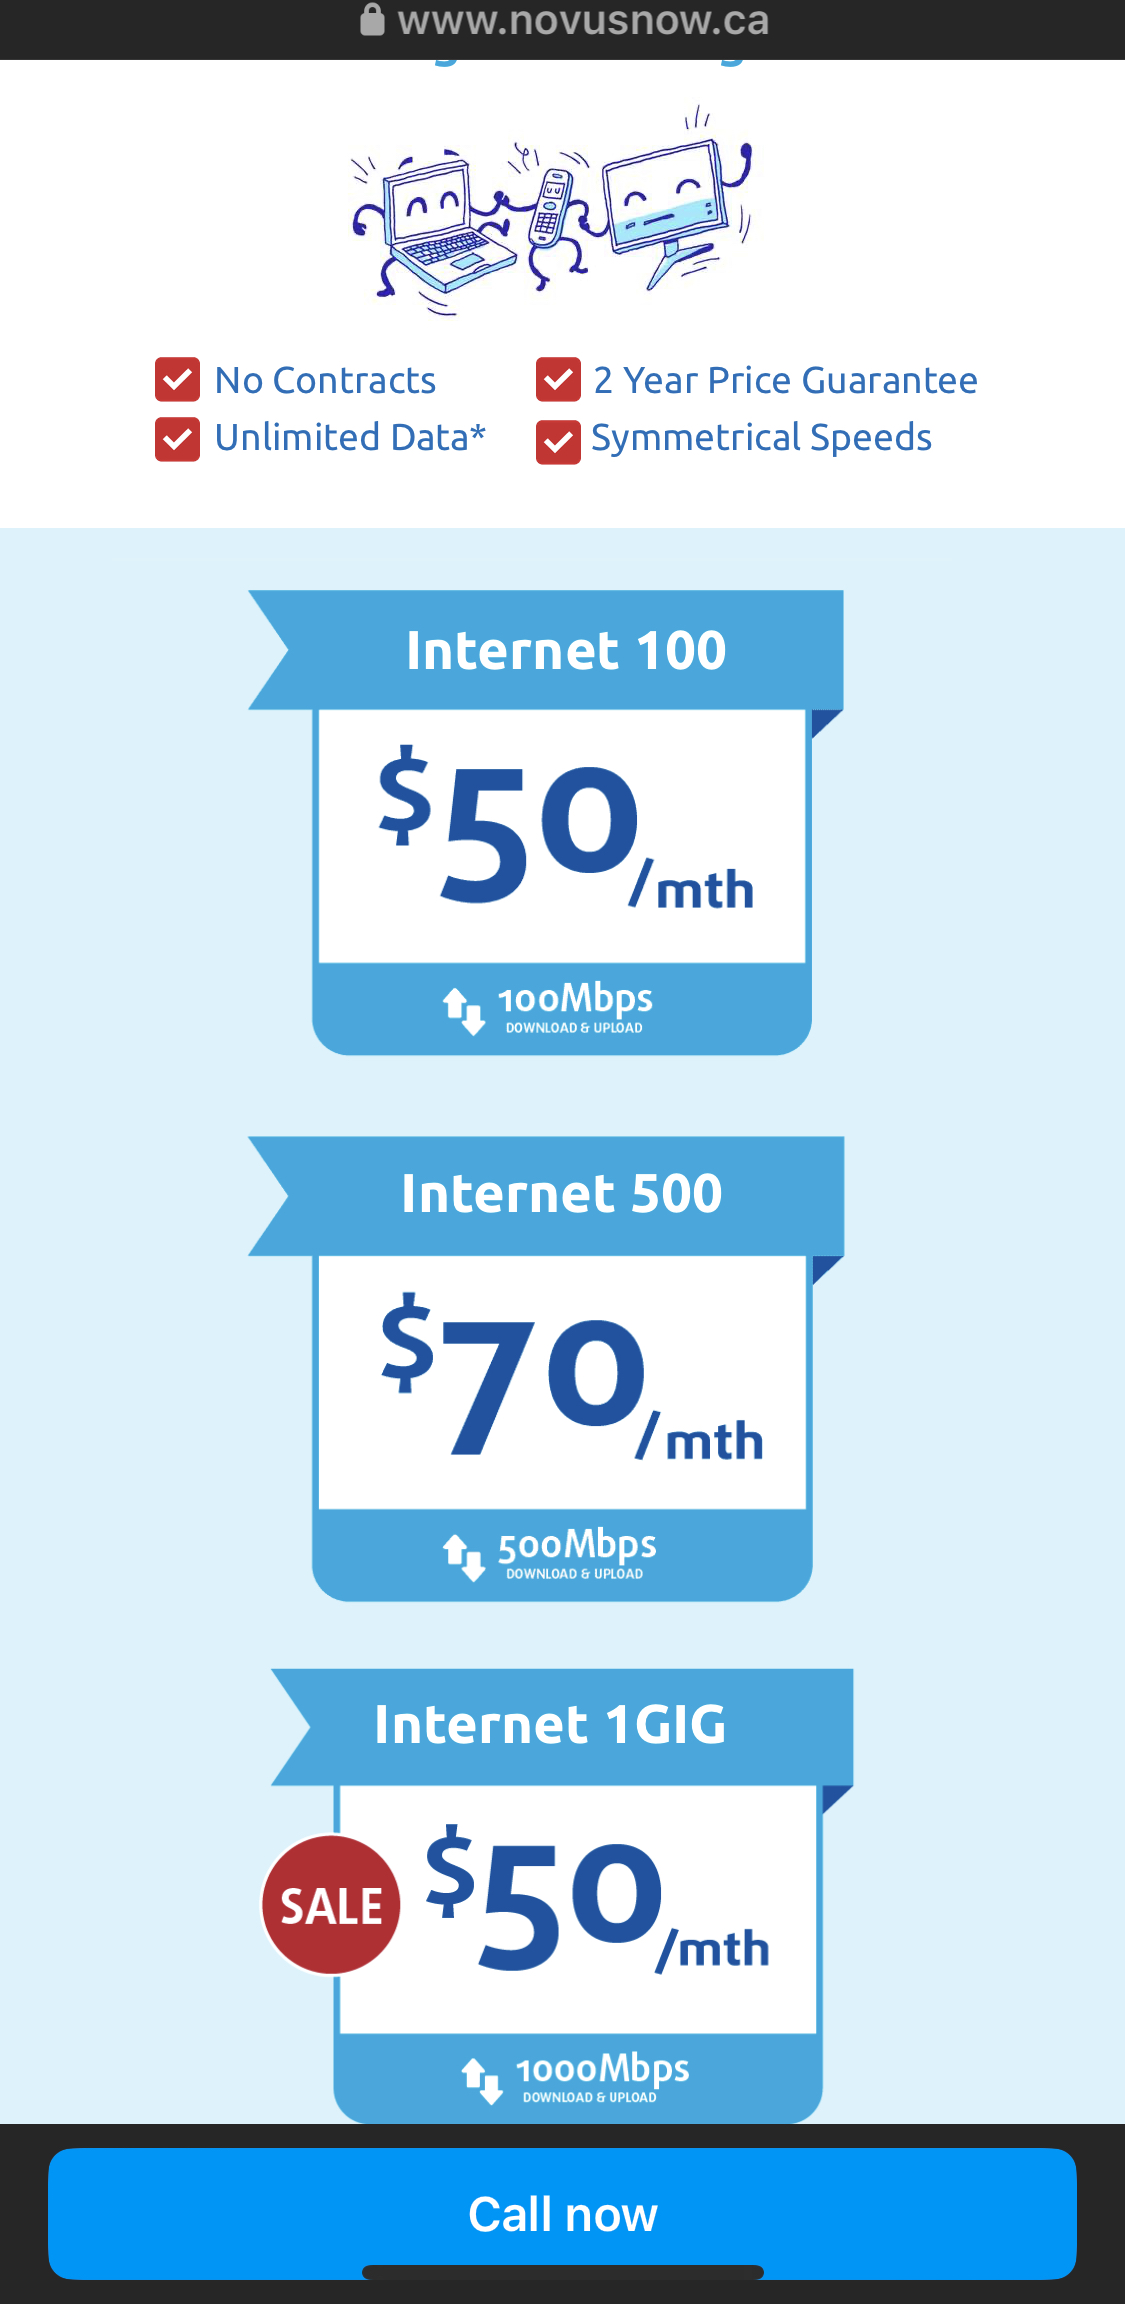 캐나다 Novus 인터넷 1GIG (1000 Mbps)